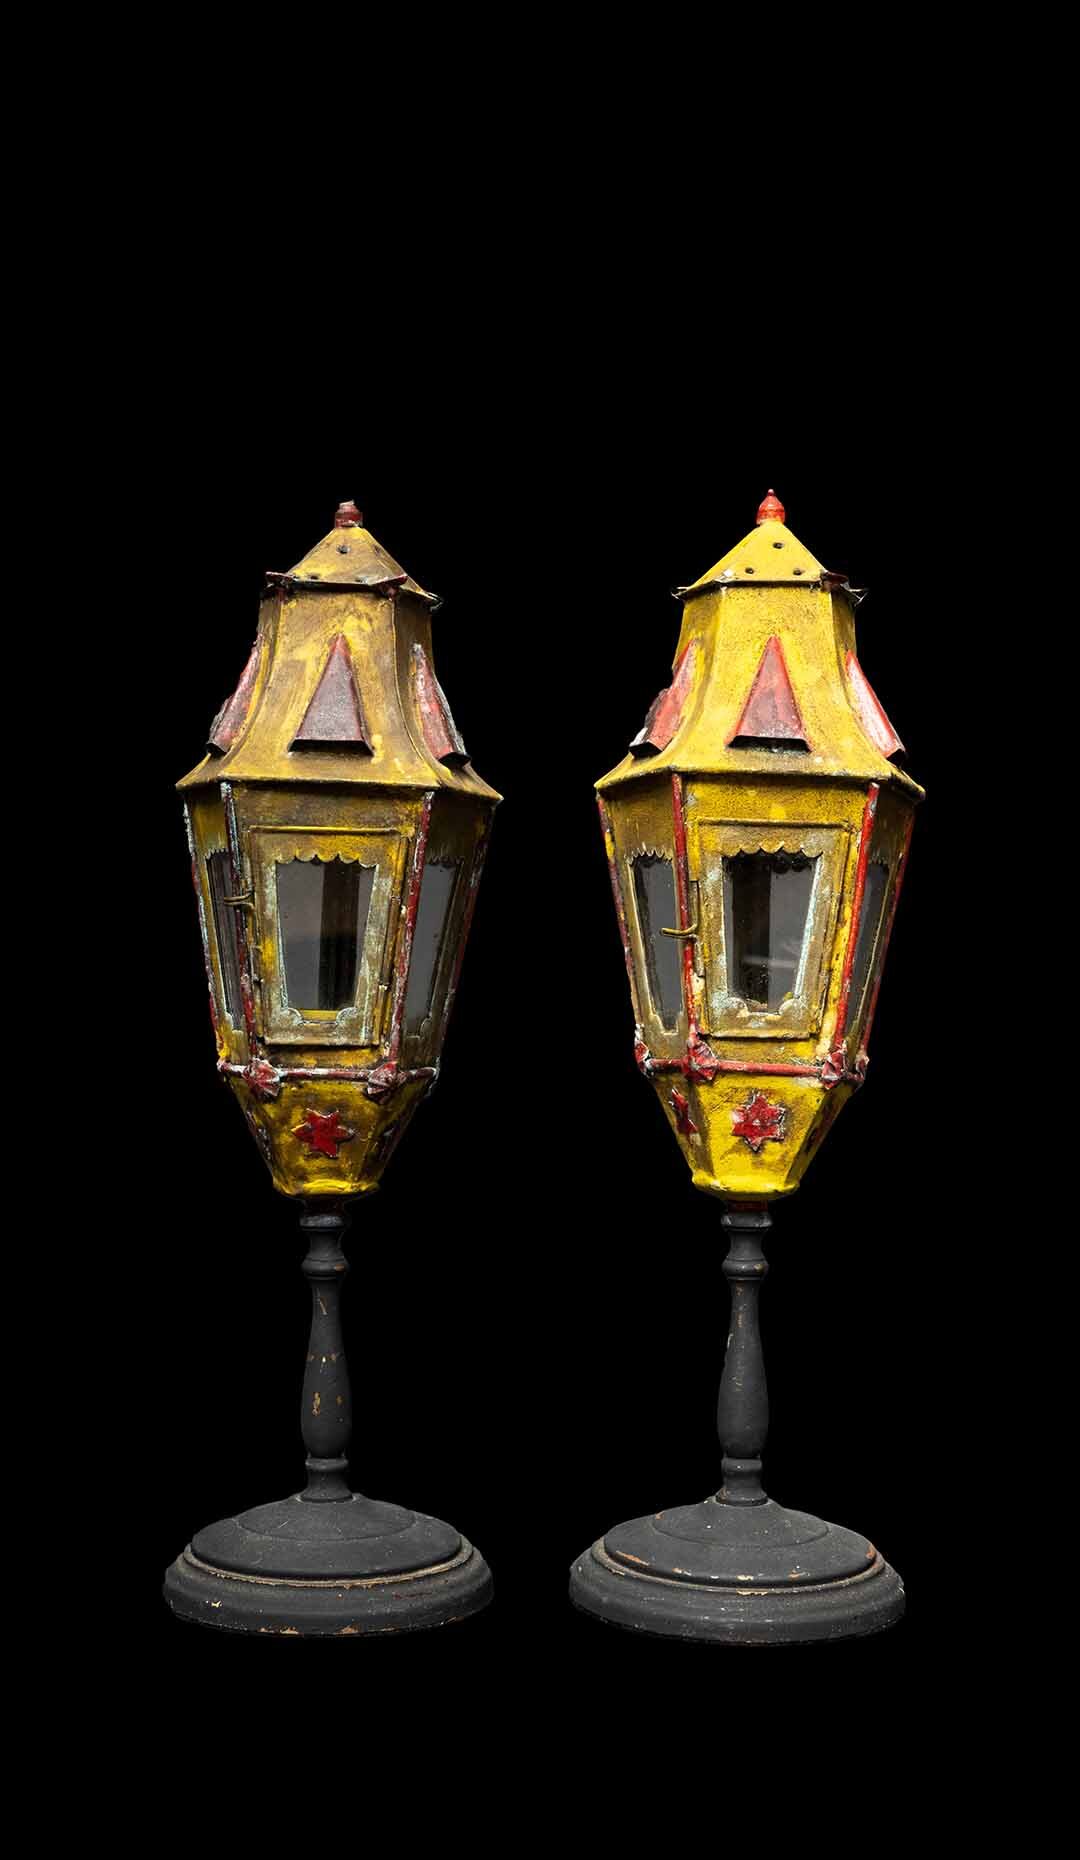 Pair of Venetian Pole Mounted Lanterns